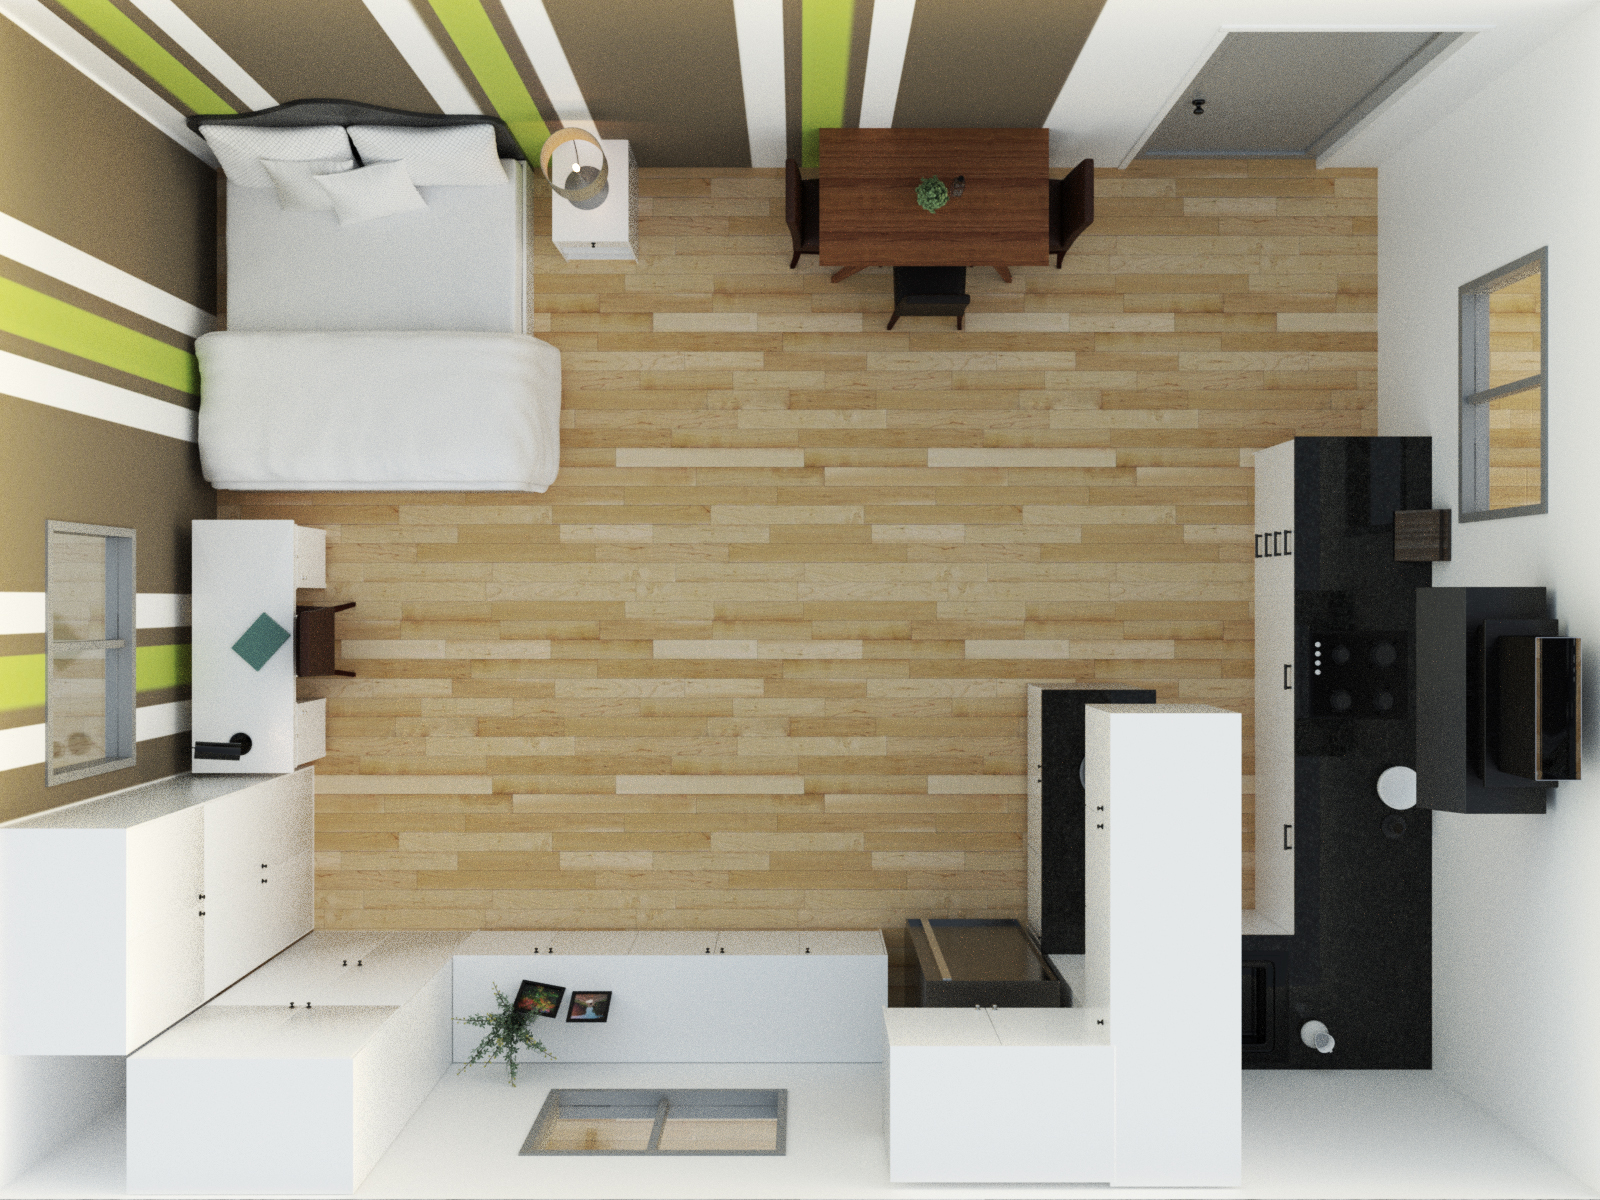 Cozy Studio Apartment by: Tesla3dCorp, 3D Models by Daz 3D